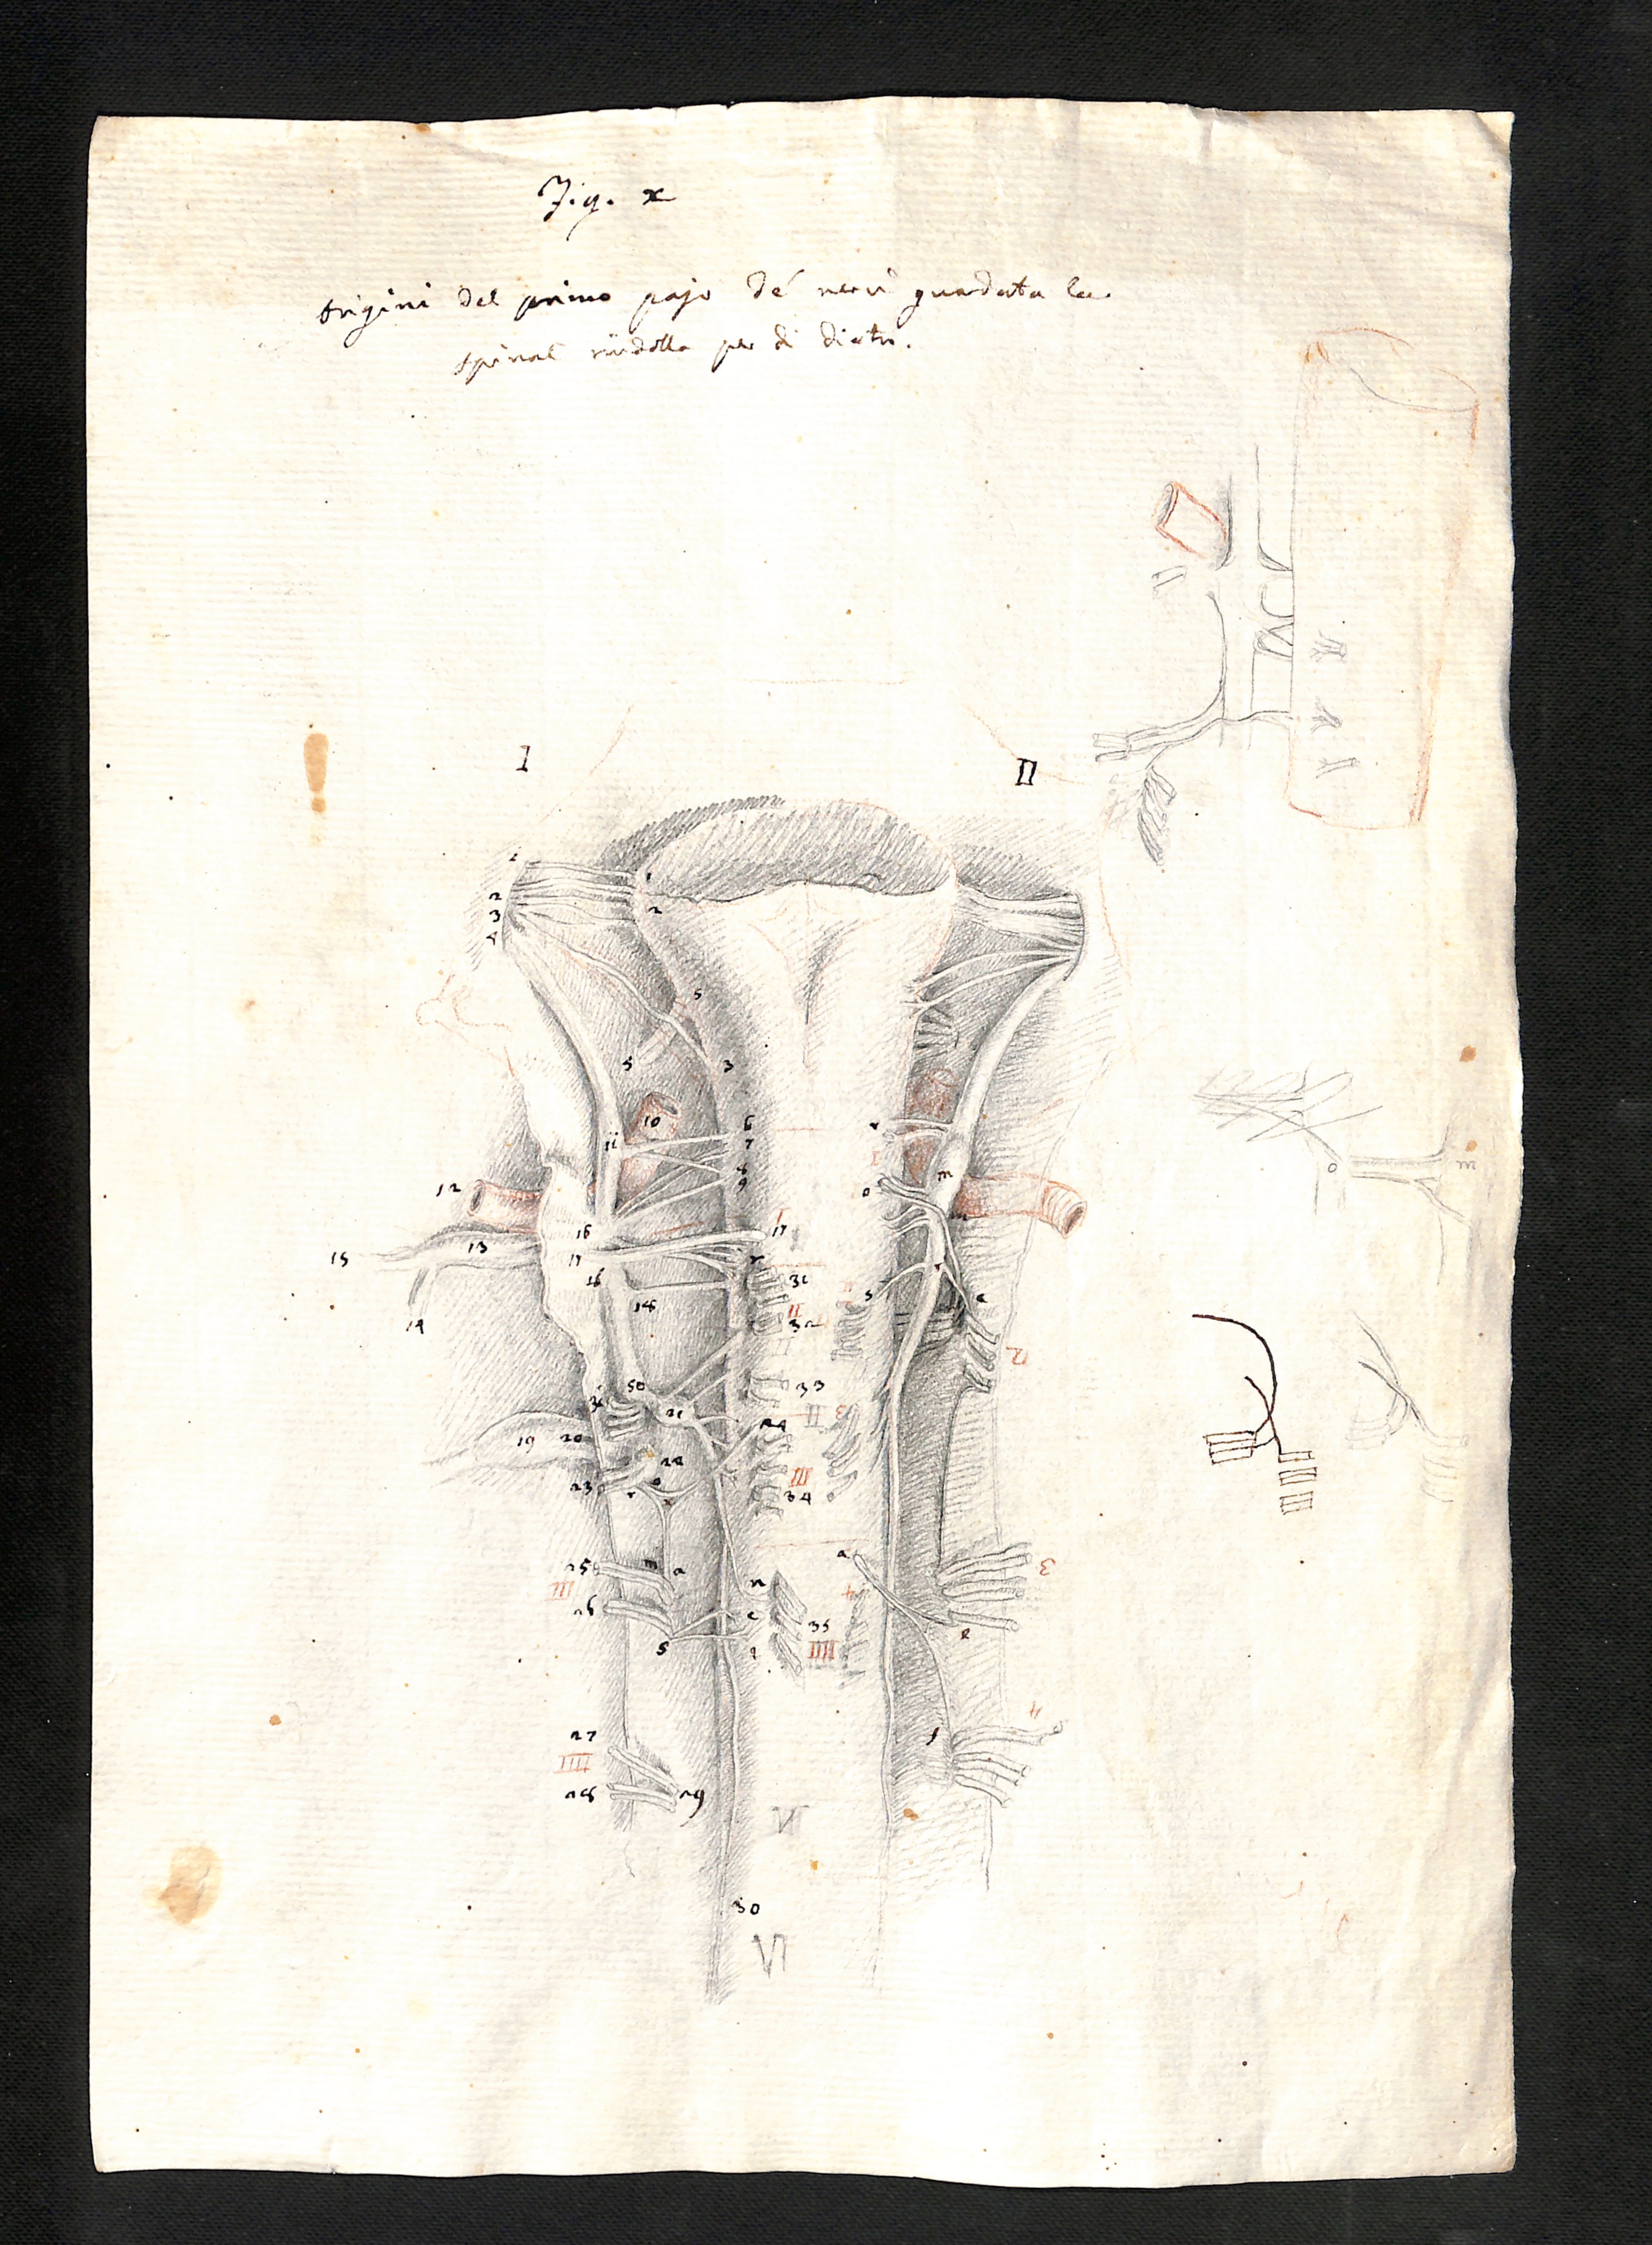 Disegno allegato a una lettera di Fontana sull’anatomia del sistema nervoso. Rovereto, Biblioteca rosminiana, Fontana, 1.2-g.